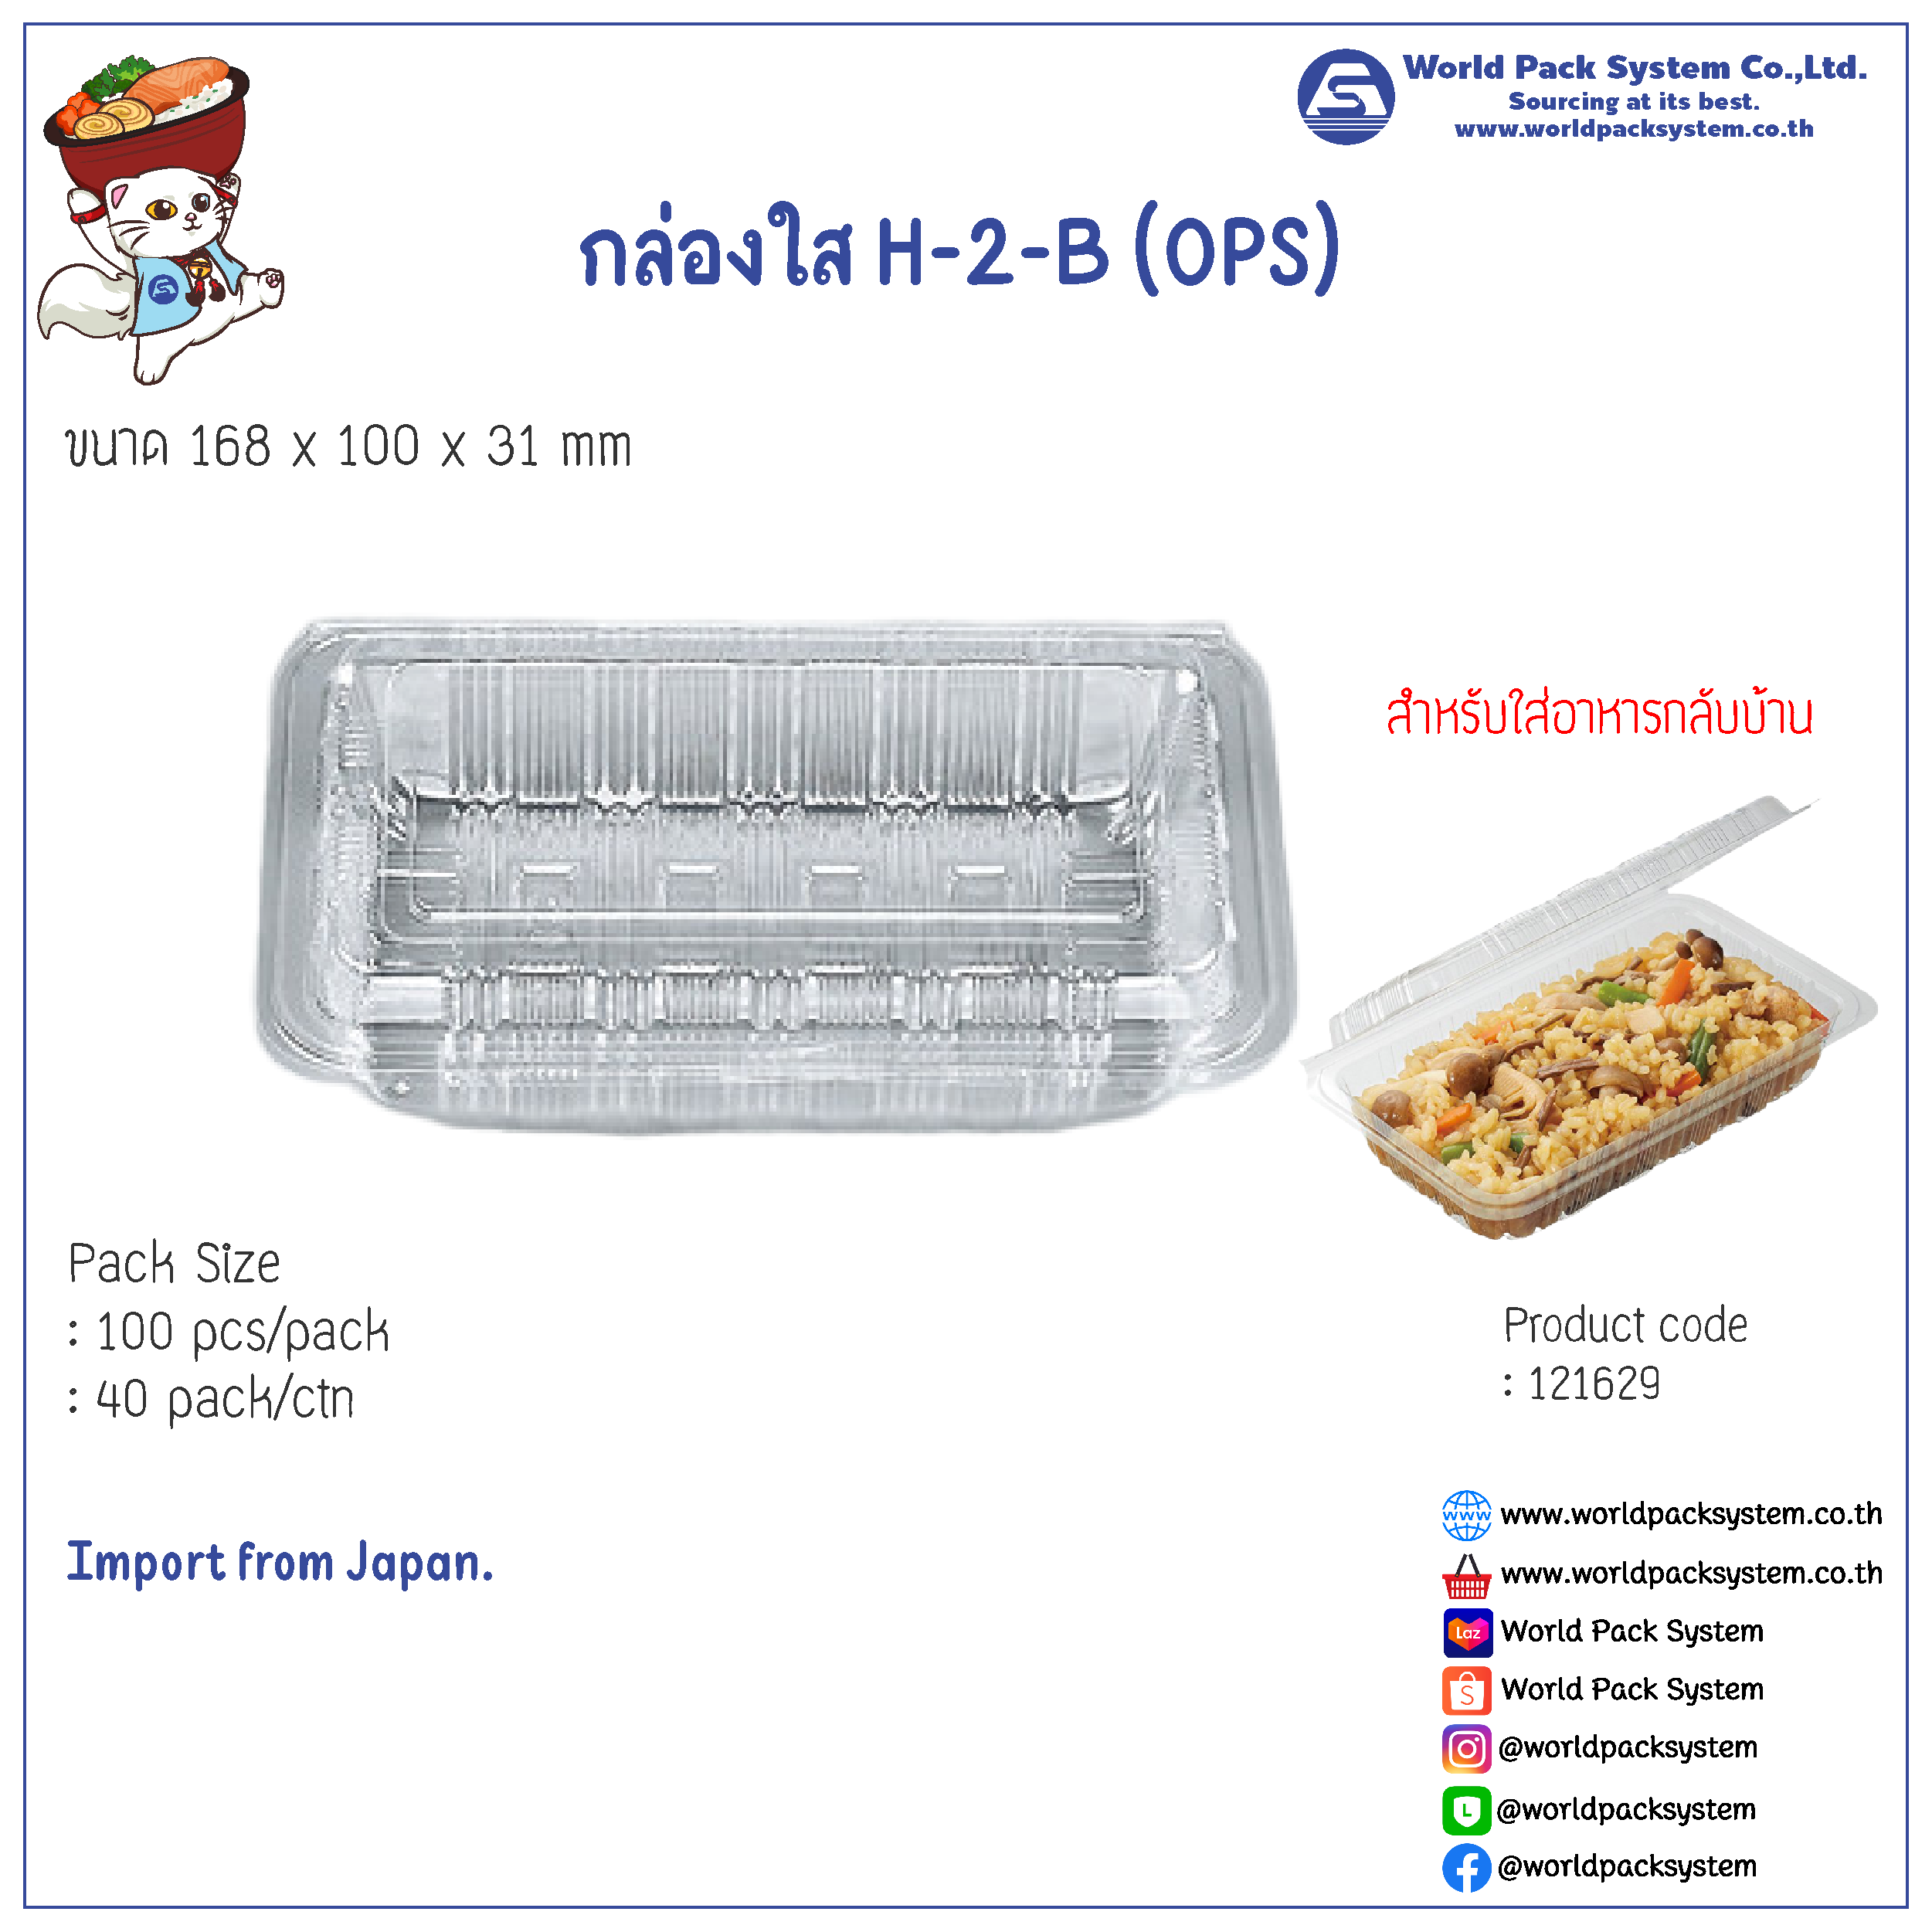 กล่องใส่อาหาร กล่องใส H-2-B (OPS) (100 pcs)